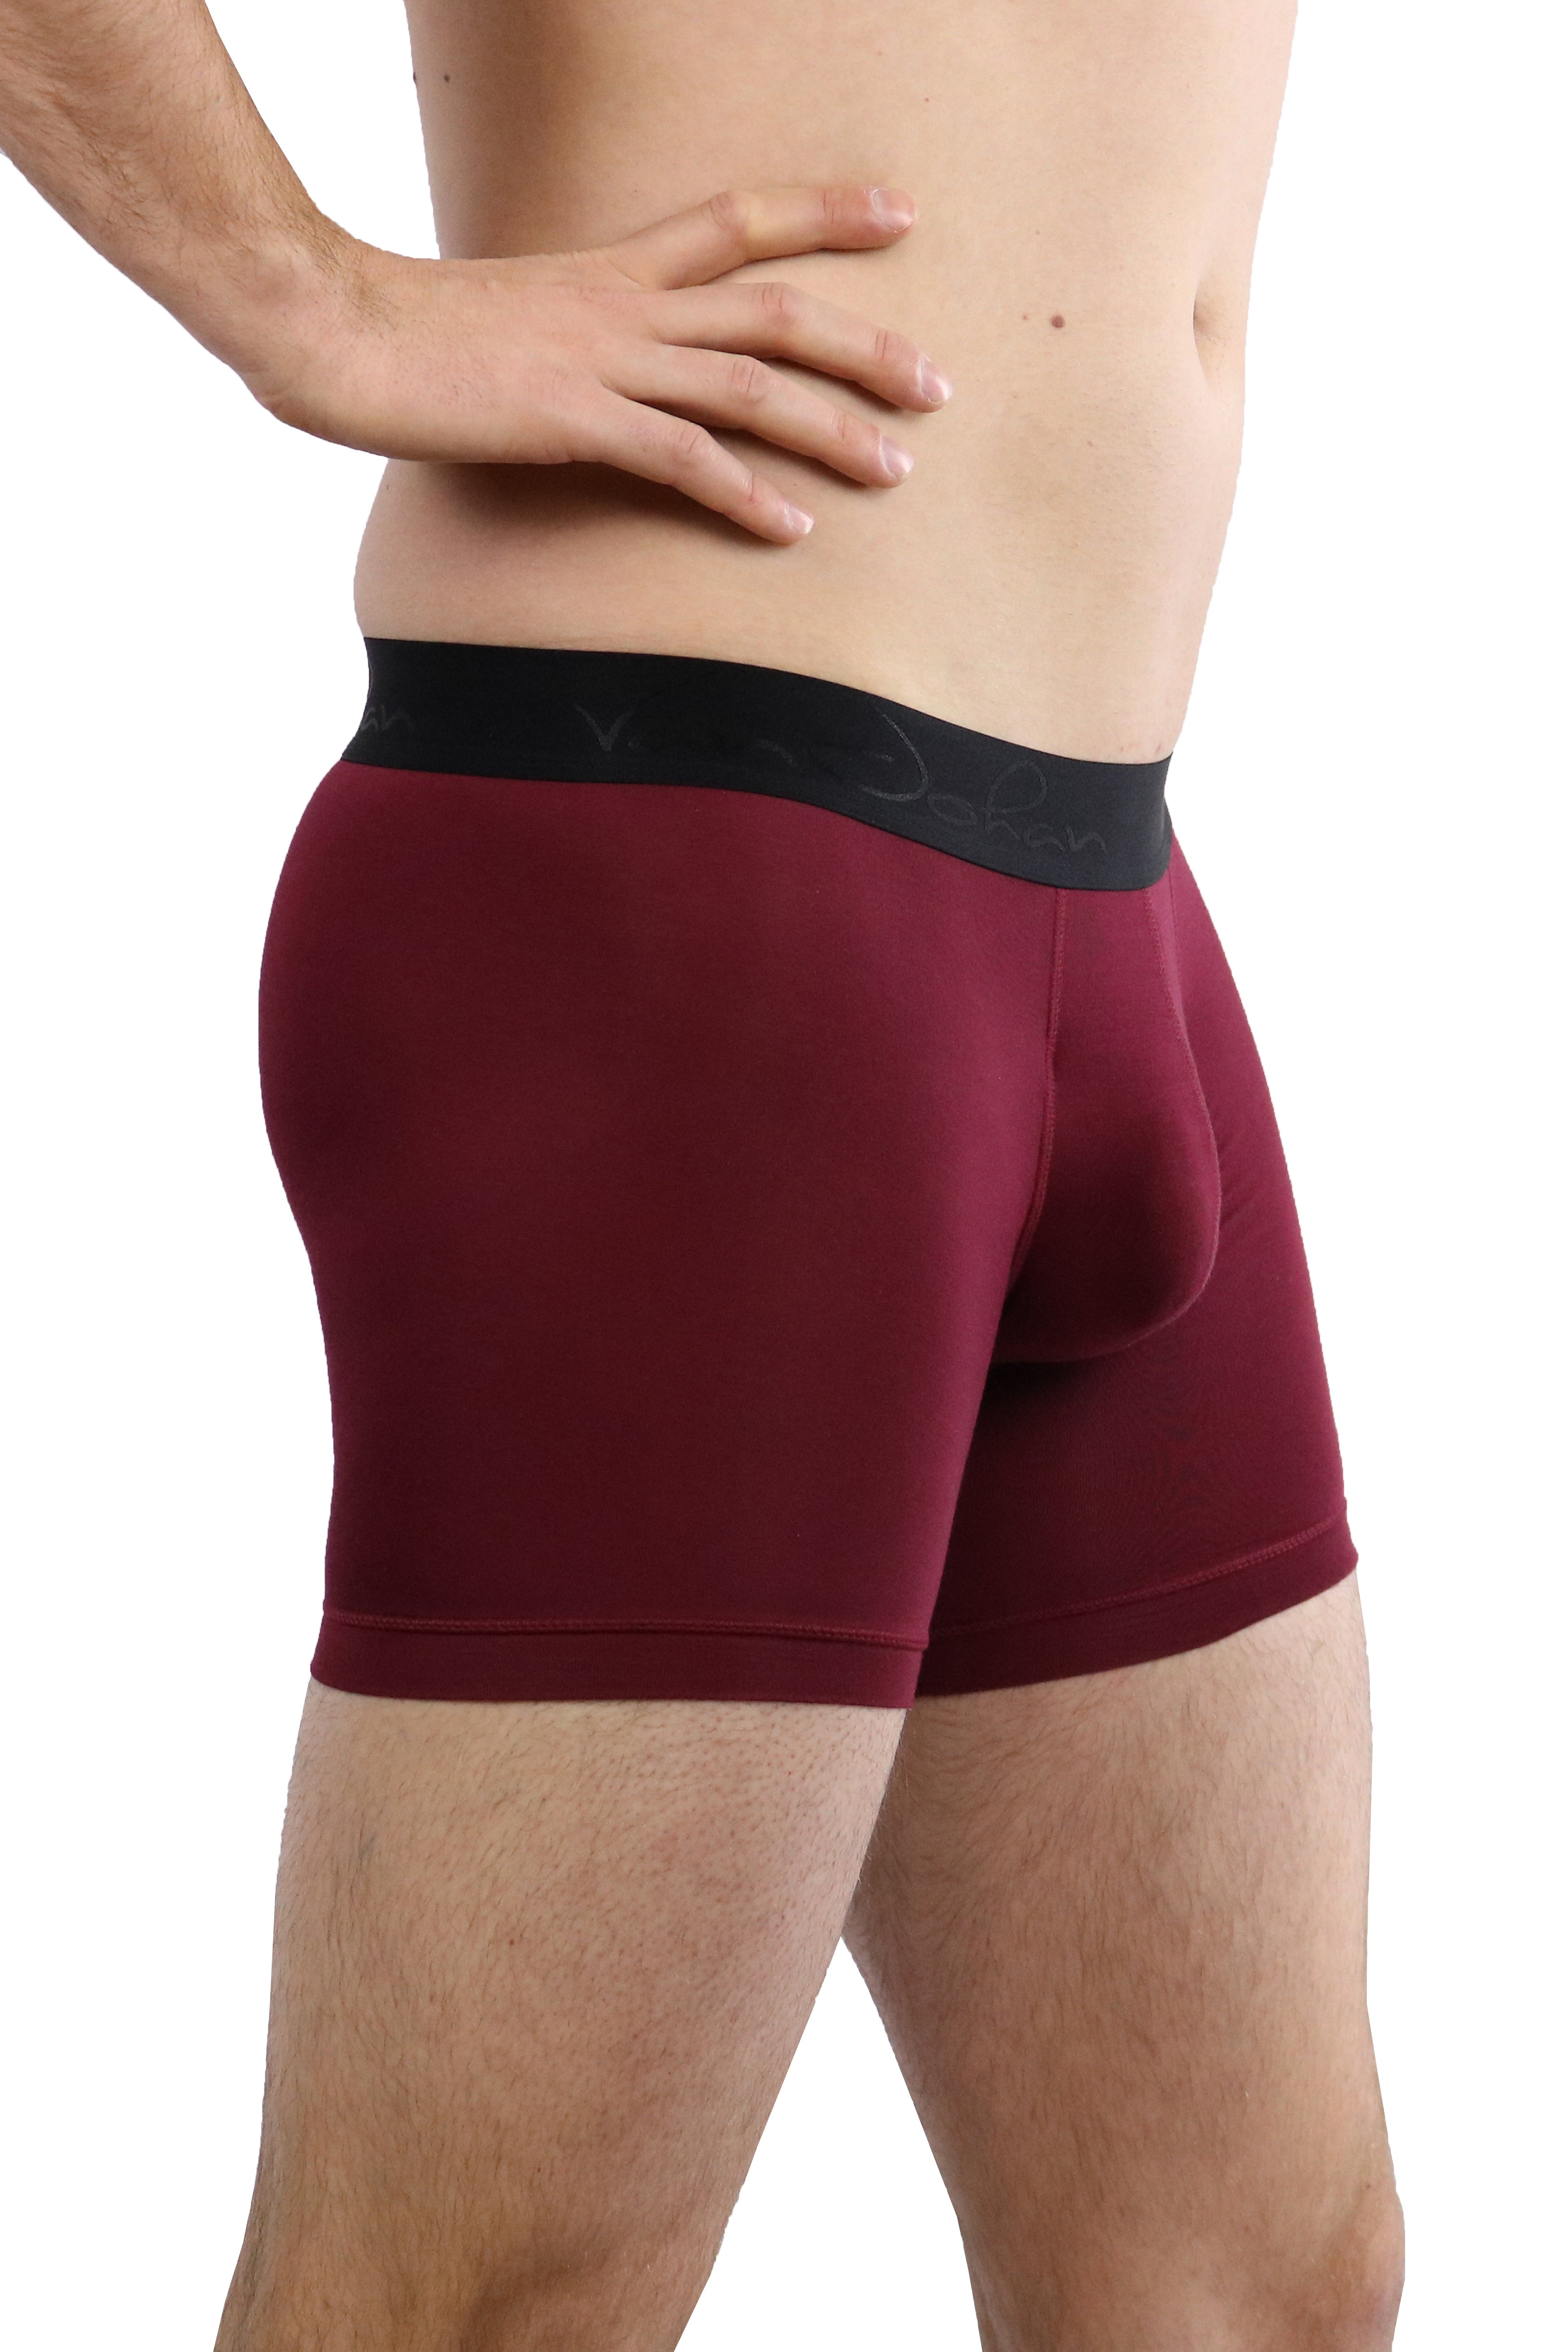 Buy 3 Get 1 Free Deep Maroon  Best Mens Underwear for Ball Support –  VanJohan Underwear